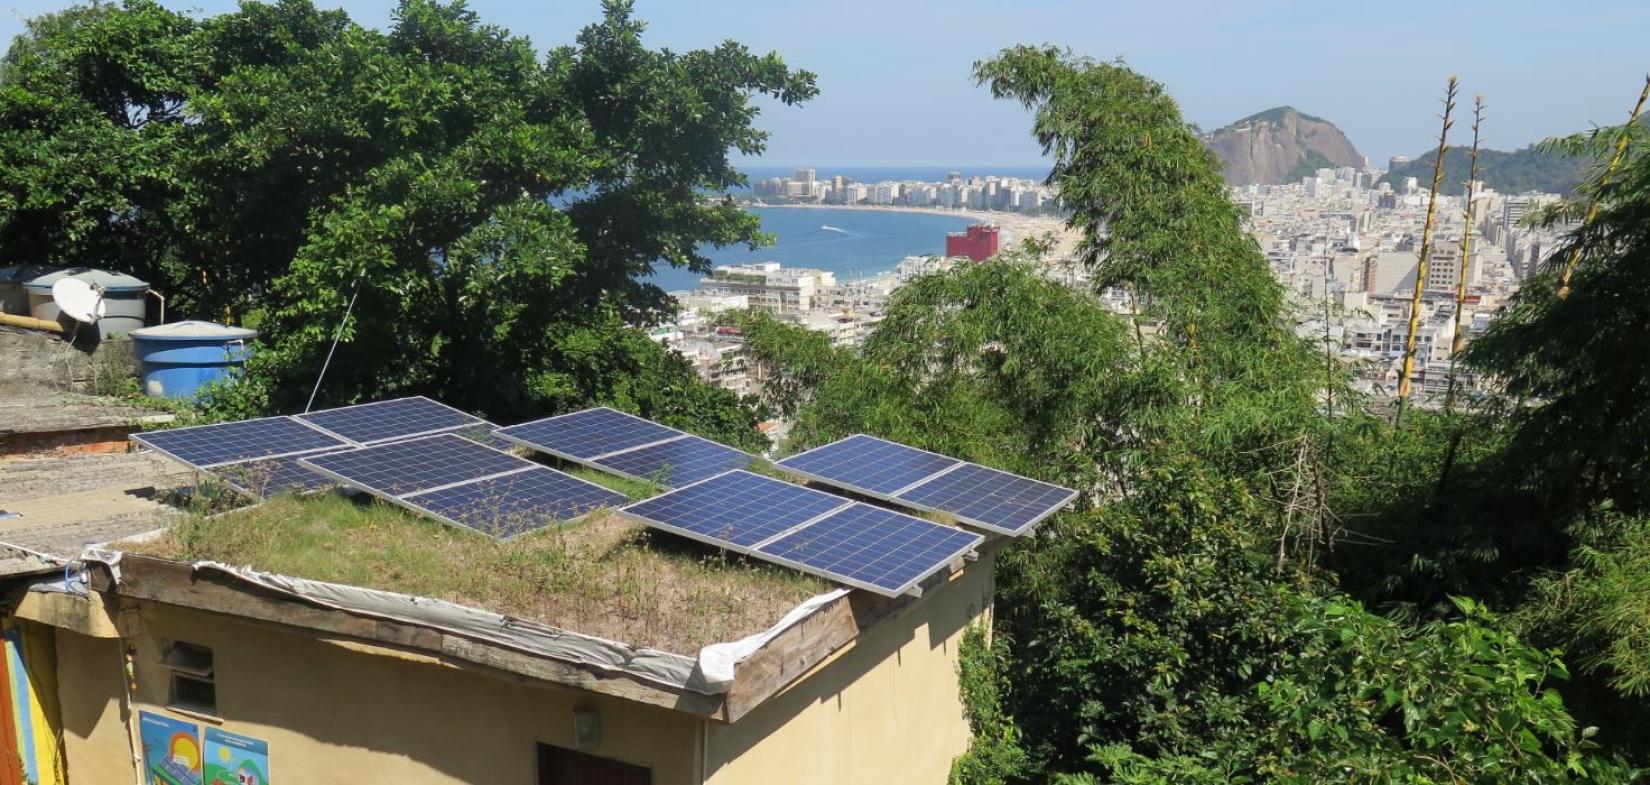 O projeto ‘Revolusolar’ prevê instalações solares, treinamento profissional para residentes e oficinas para crianças sobre sustentabilidade.